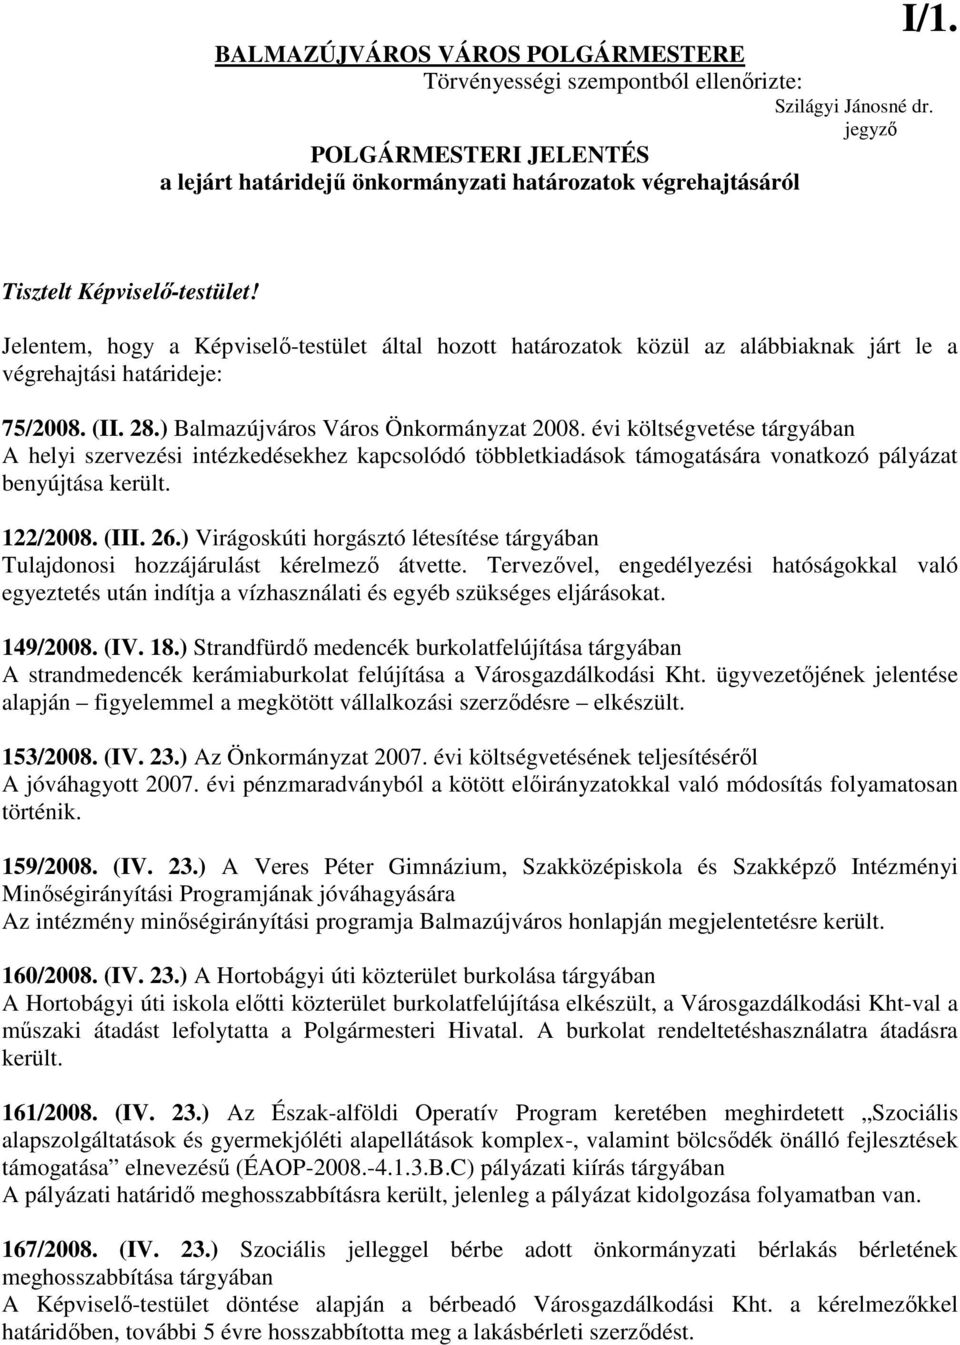 Jelentem, hogy a Képviselı-testület által hozott határozatok közül az alábbiaknak járt le a végrehajtási határideje: 75/2008. (II. 28.) Balmazújváros Város Önkormányzat 2008.